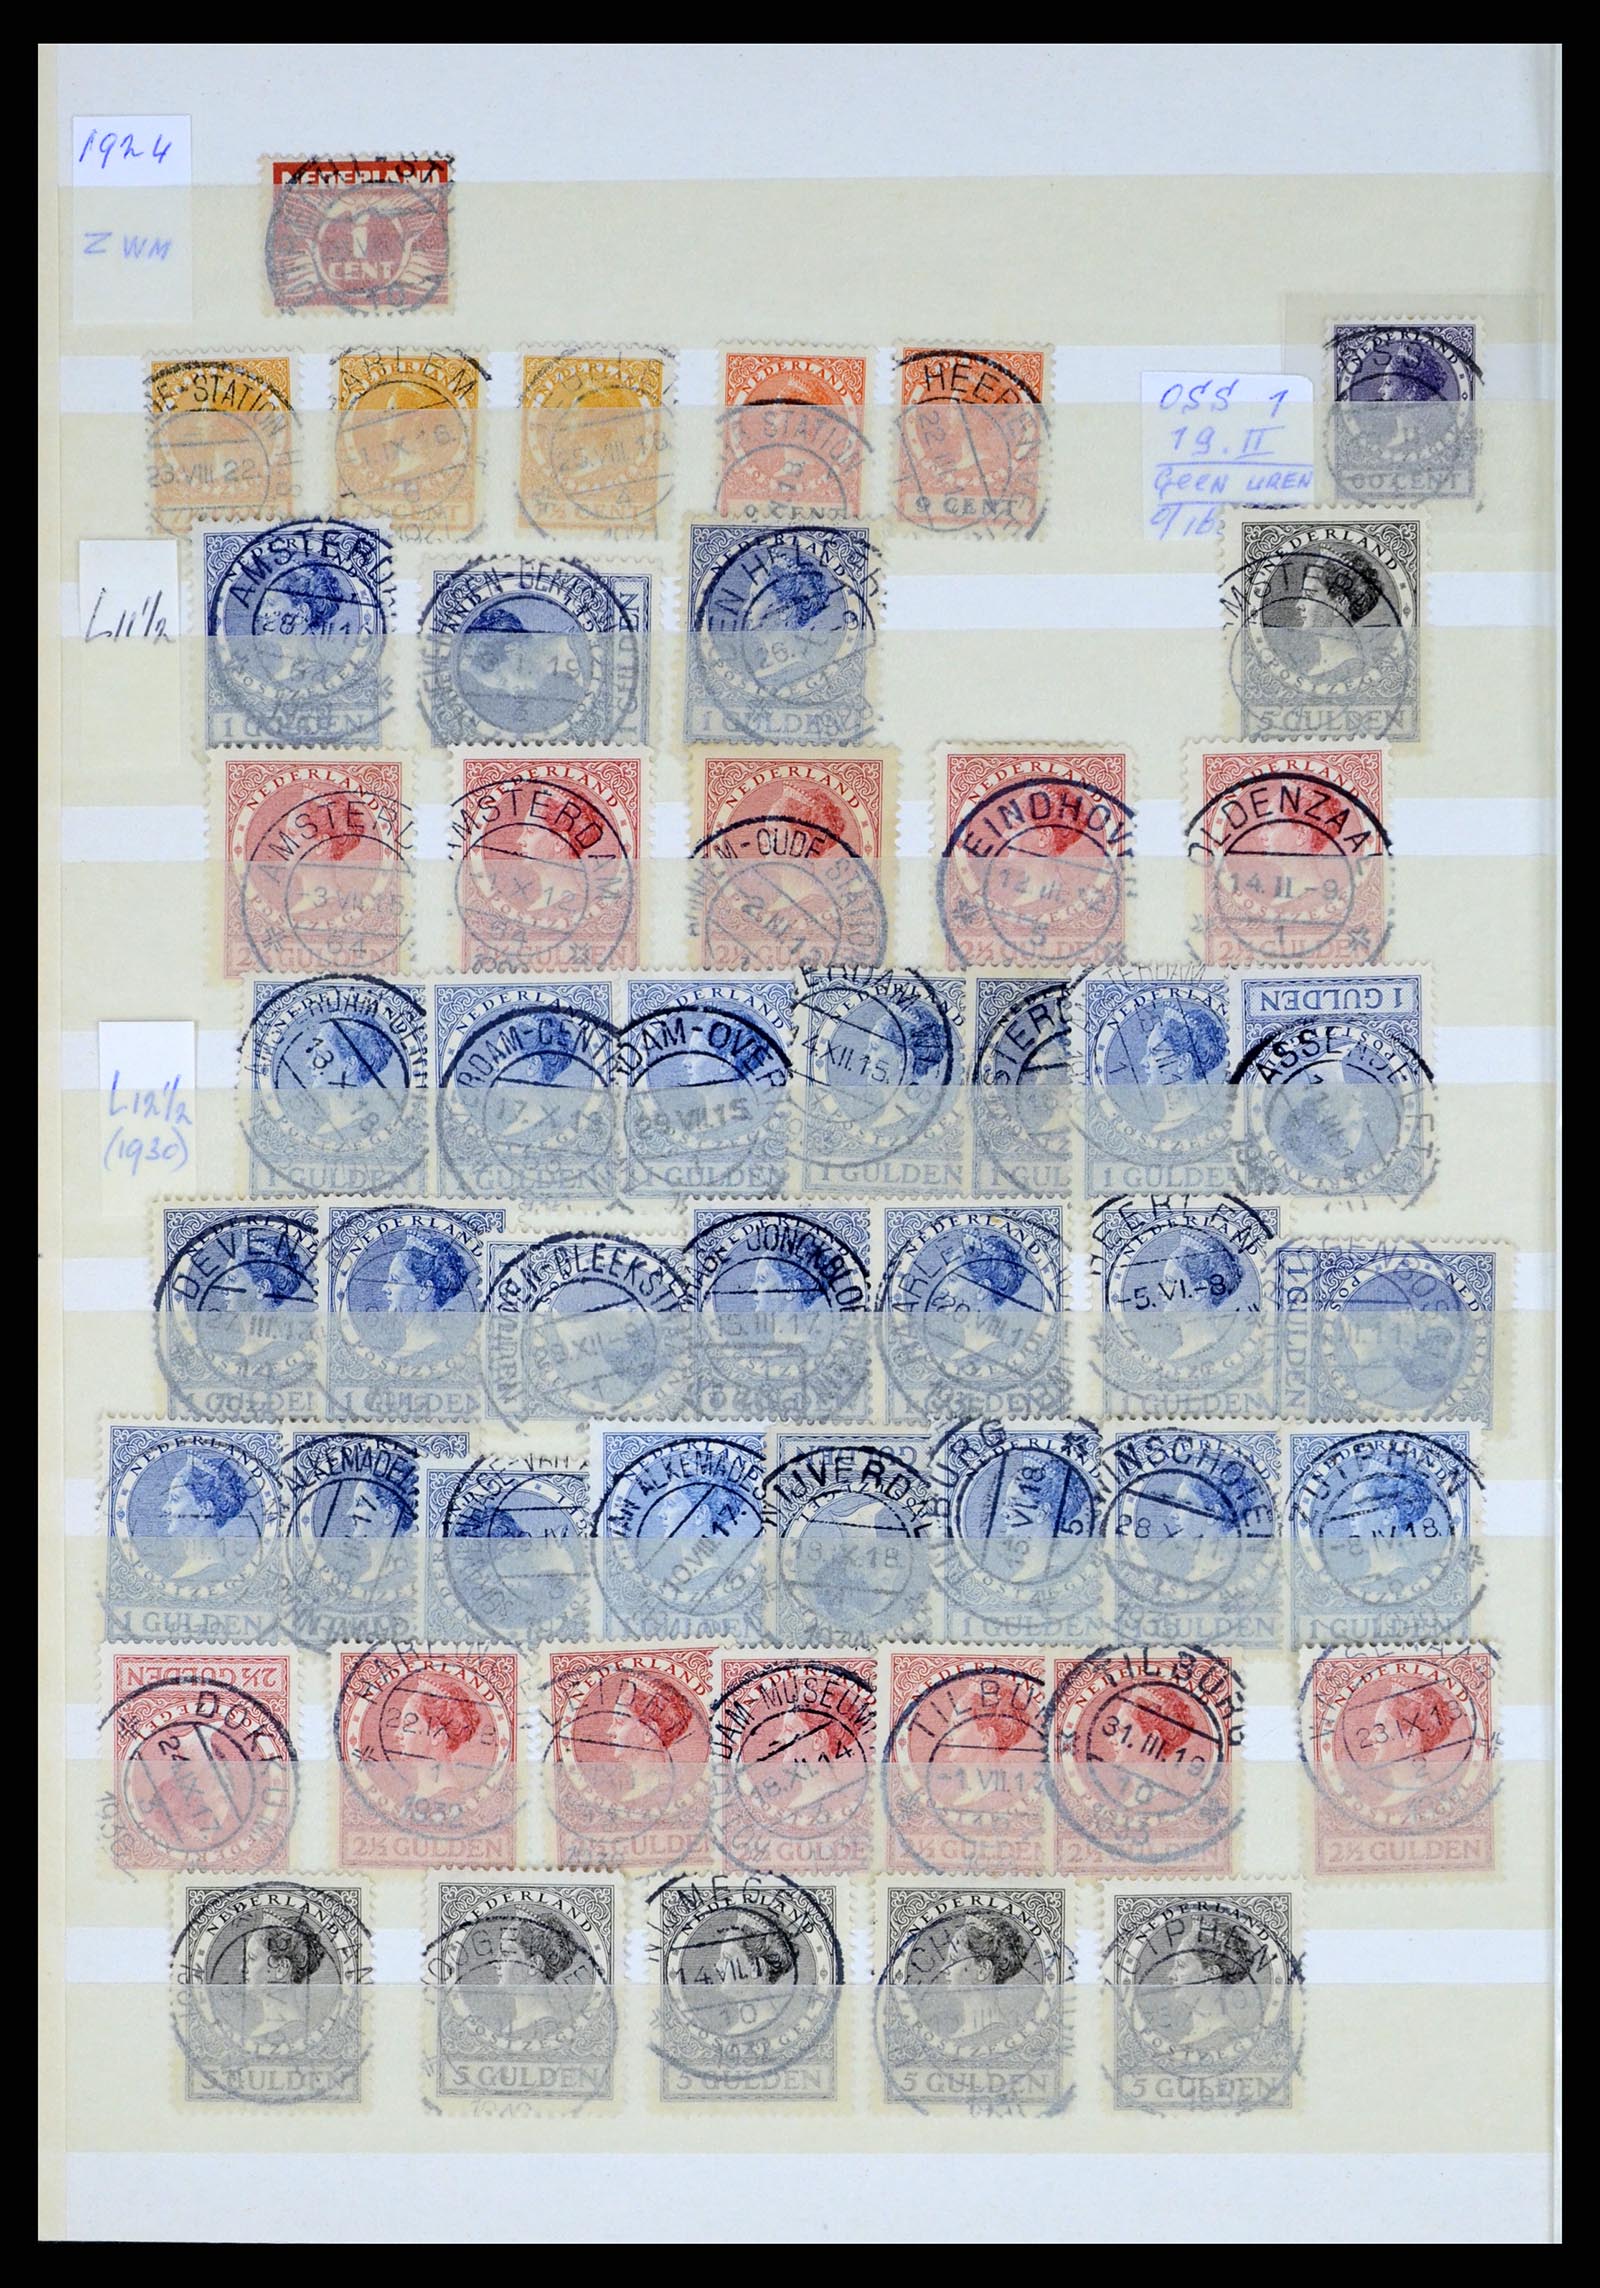 37424 004 - Postzegelverzameling 37424 Nederland kortebalk stempels.